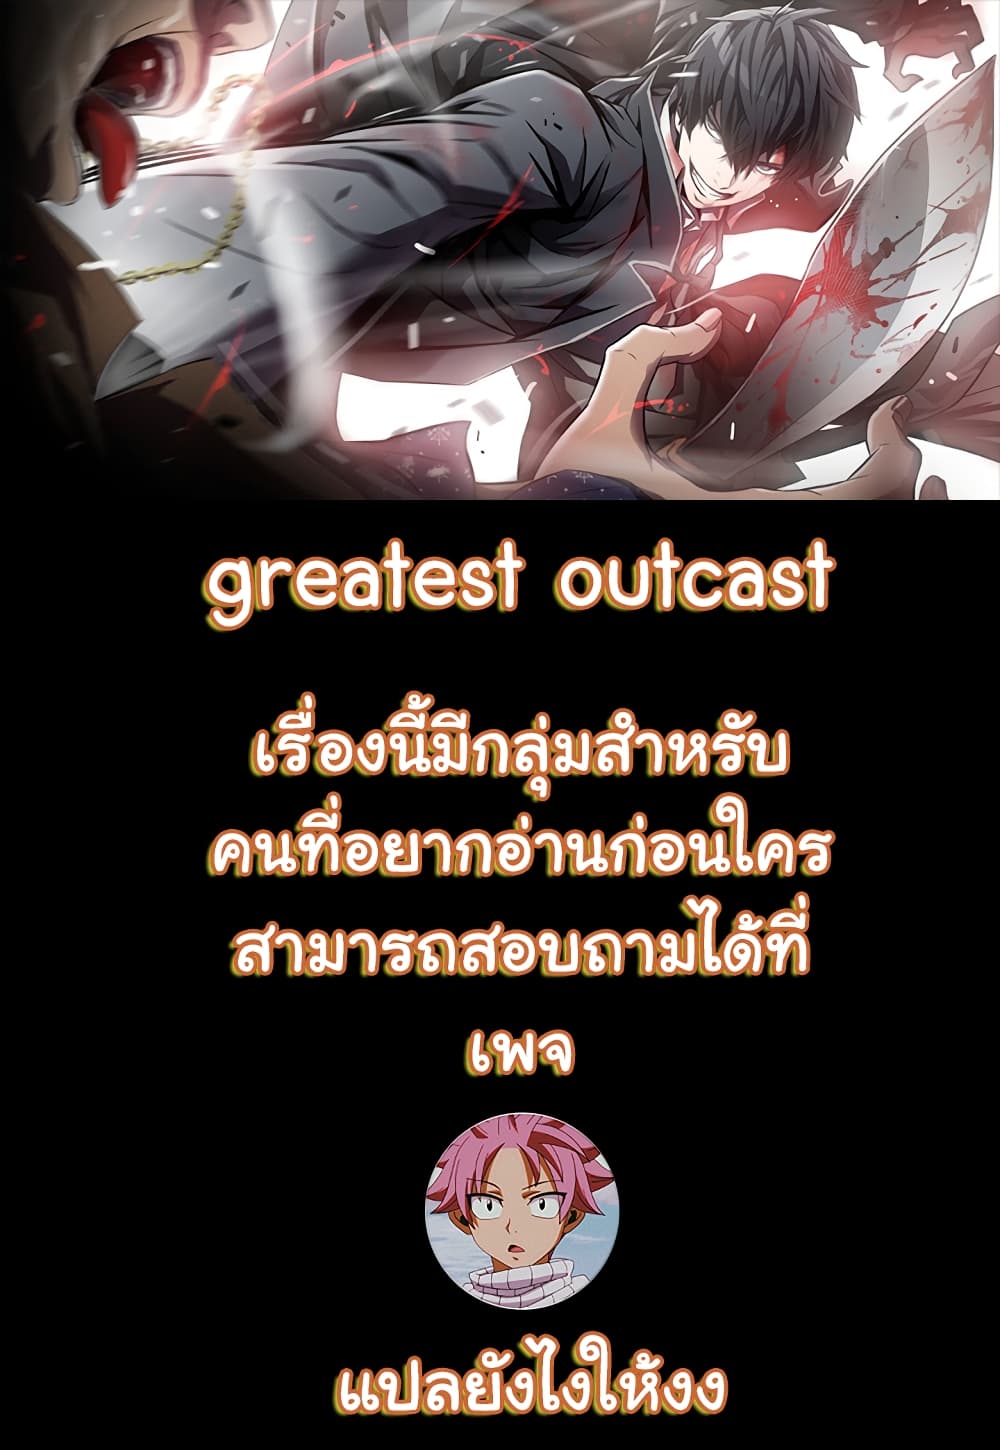 Greatest Outcast 6 01